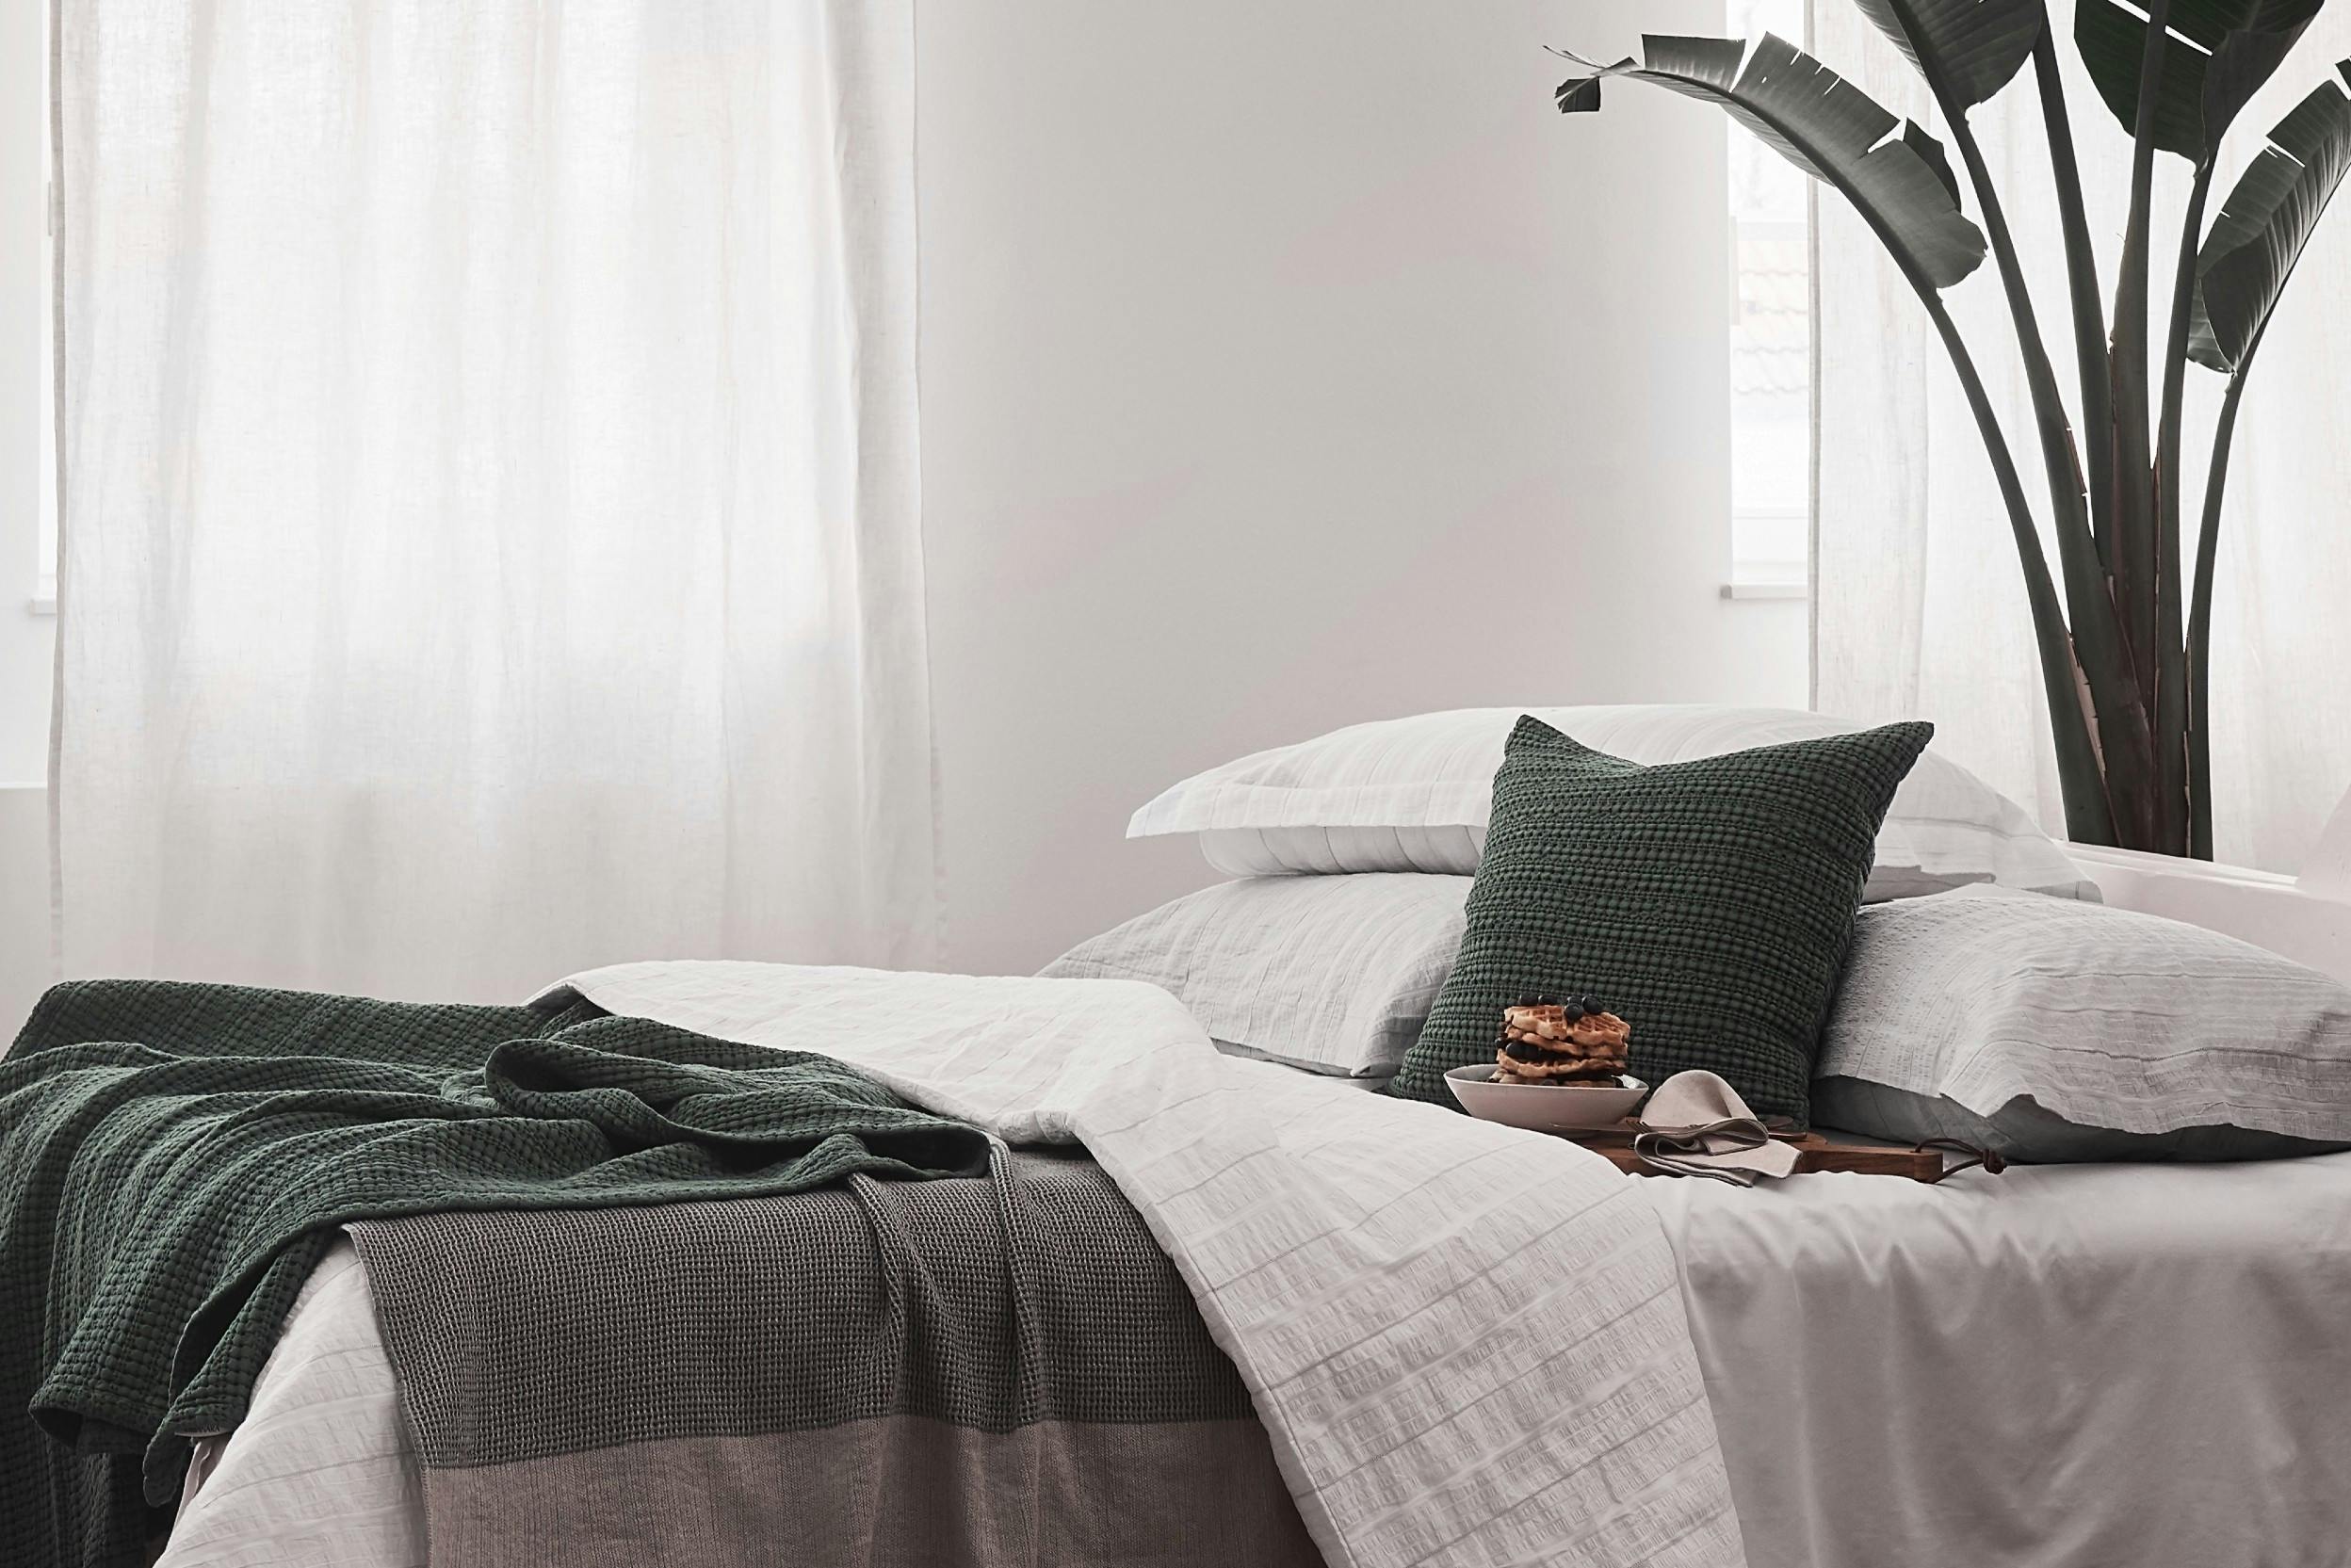 Seersucker-Bettwäsche in Weiß, dekoriert mit grünen Betttextilien neben einer großen Zimmerpflanze